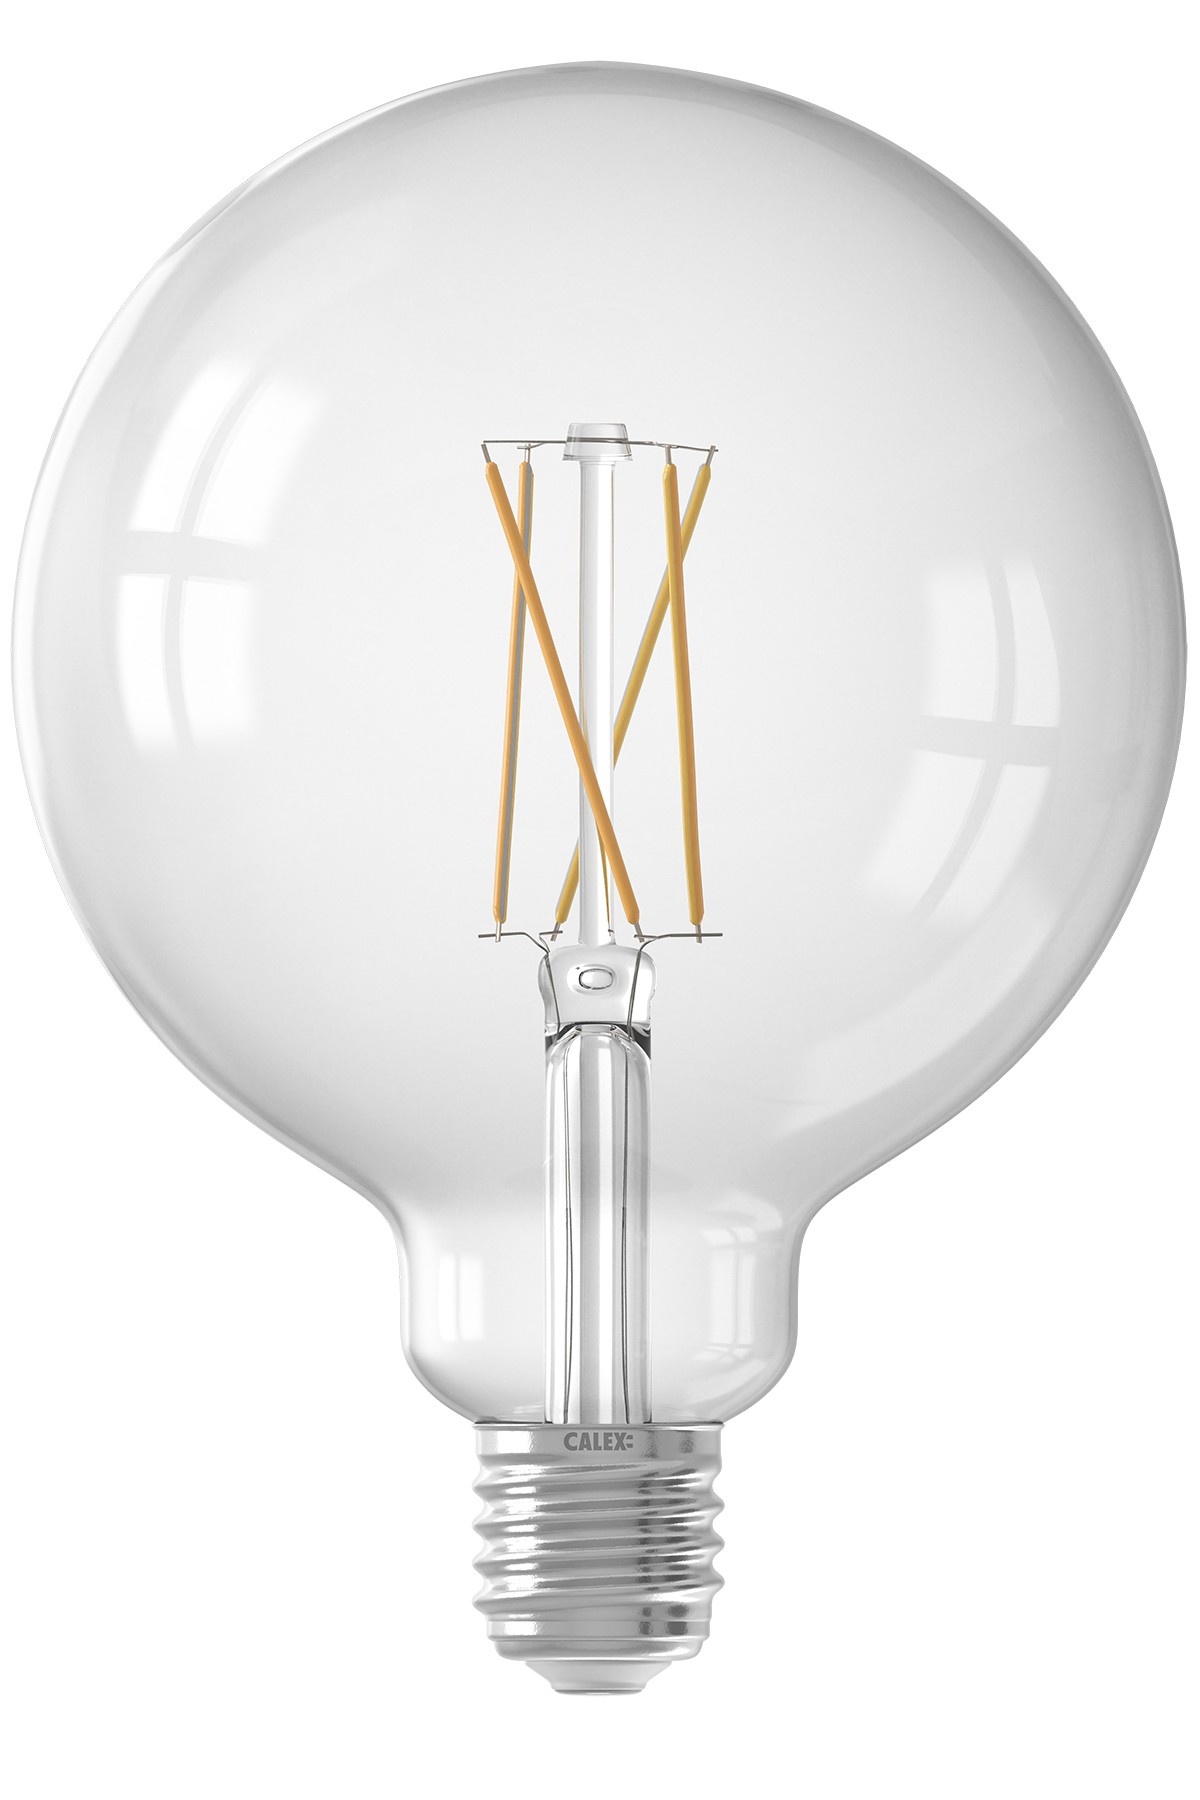 Druif Acteur Kameraad Calex Smart Lamp - E27 - 7,5W - 1055 Lumen - 1800K - 3000K - Lightexpert.nl